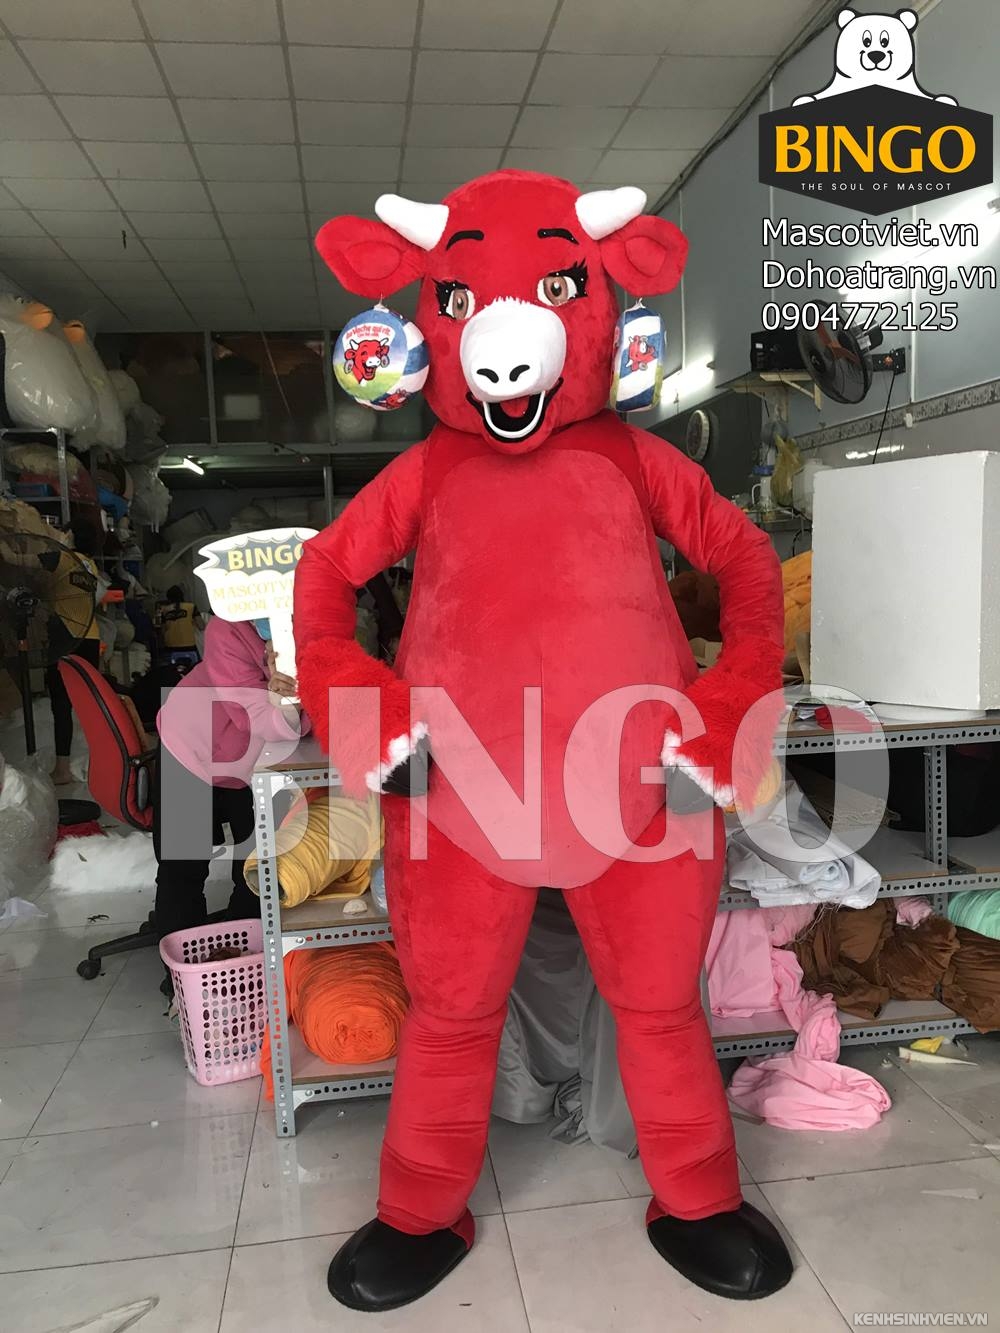 mascot-con-bo-cuoi-bingo-costumes-0904772125.jpg